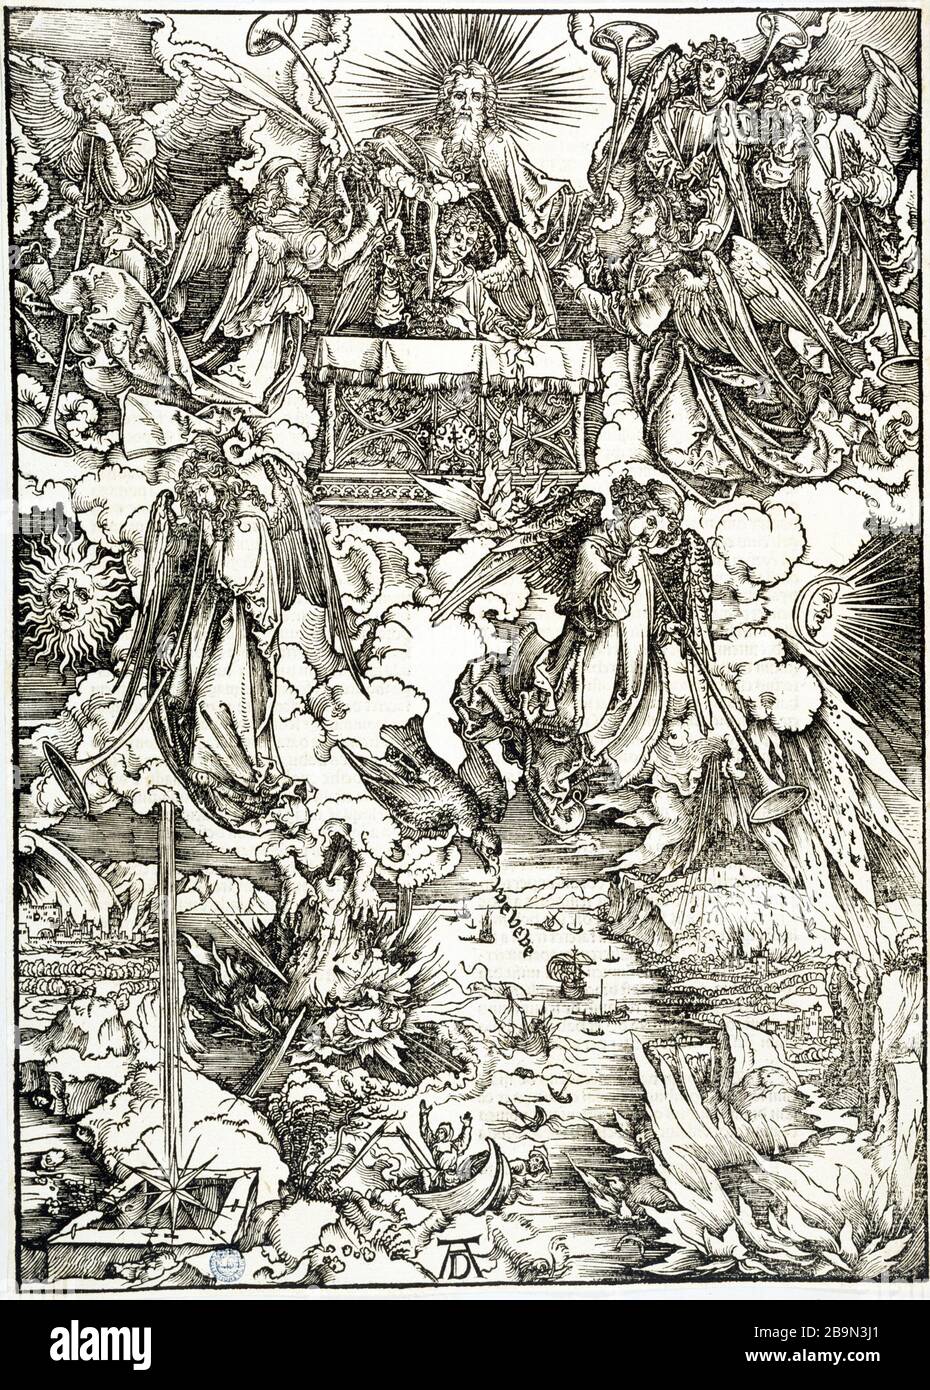 APOCALYPSE - LES SEPT CORNES DE L'APOCALYPSE - SEPTEMBRE ANGES AVEC CORNES  ALBRECHT DÜRER (1471-1528). 'L'Apocalypse (les 7 trompettes de l'Apocalypse)  7 anges avec des trompettes, B 68' - 2ème édition latine.